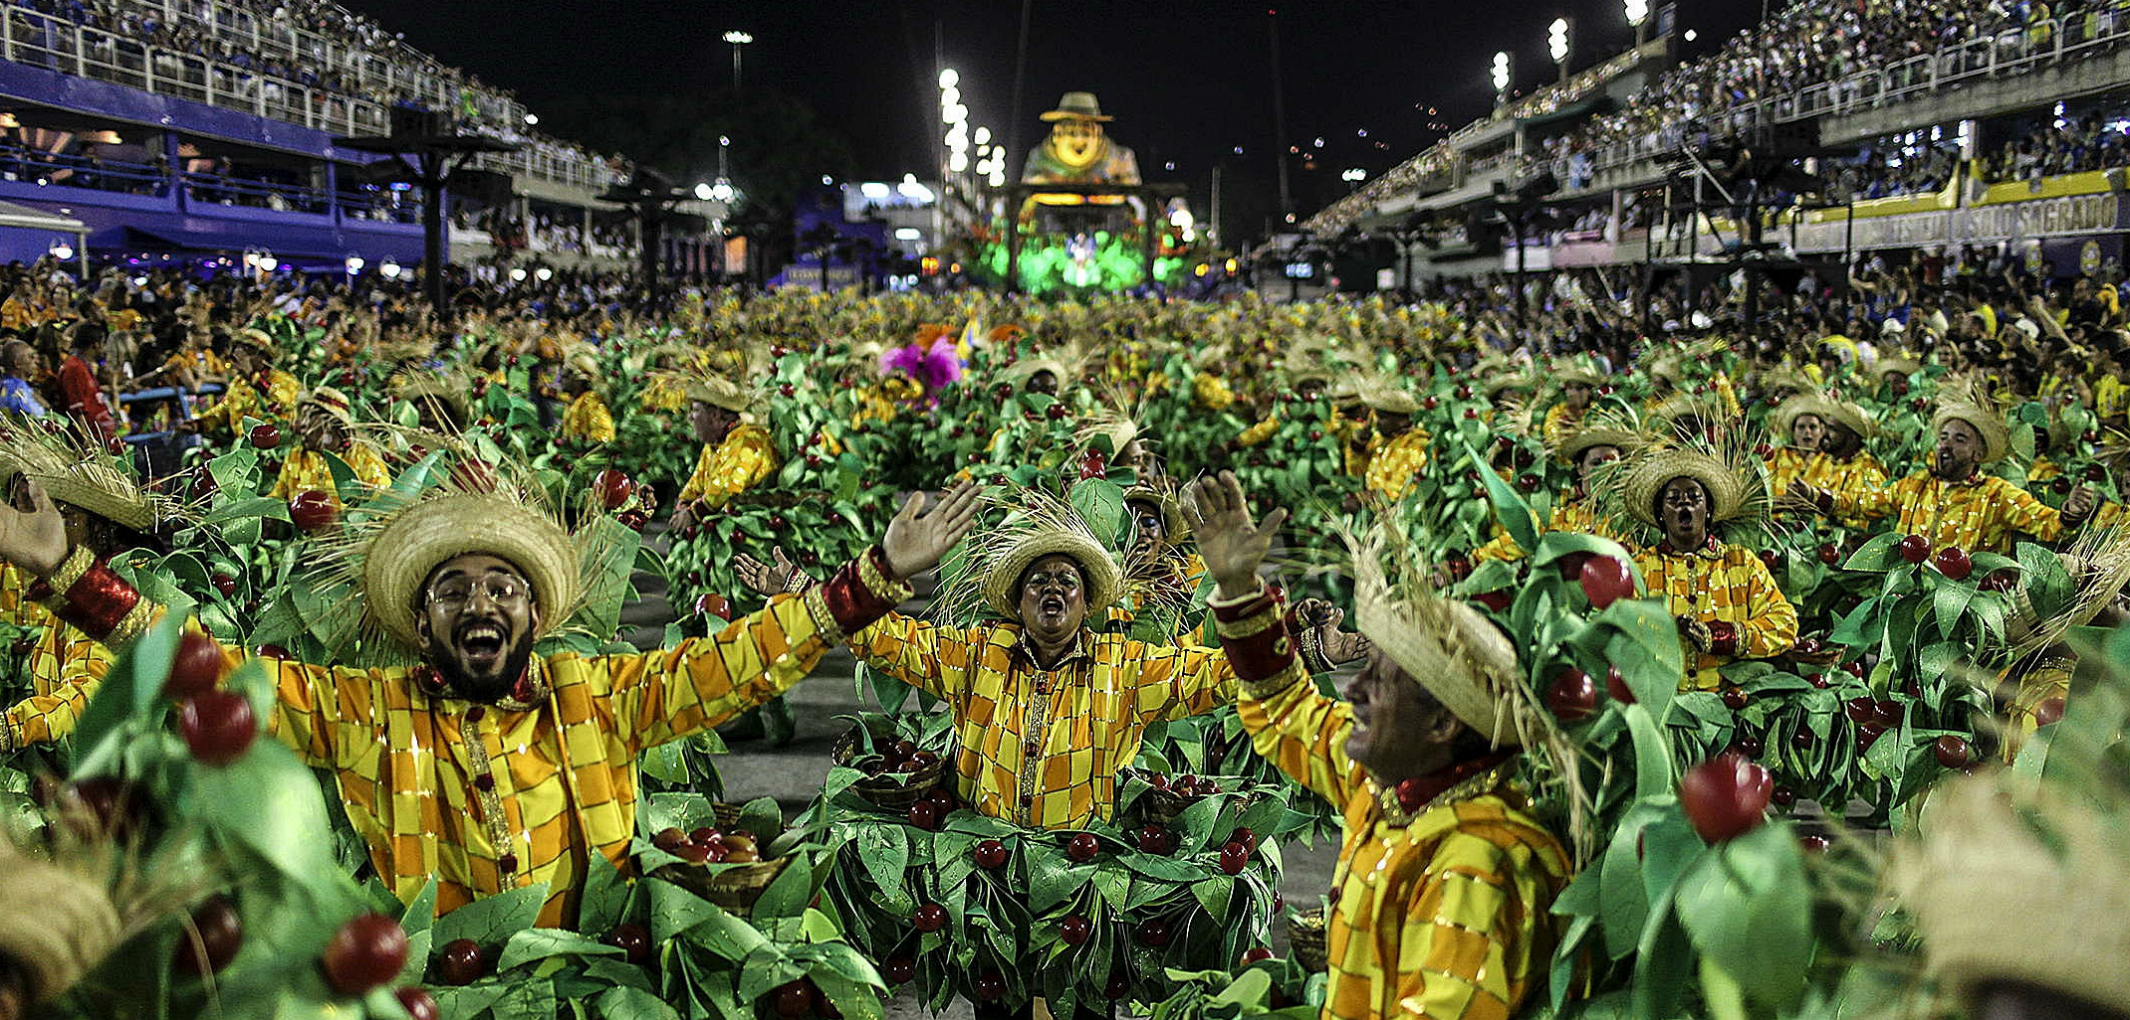 La Escuela de Samba Unidos da Tijuca, que rinde homenaje al mundo rural y a la vida de los trabajadores del campo, durante el primer día de los desfiles de las escuelas de samba del Grupo Especial, en la pasarela de samba celebrada  en febrero de 2016, en el sambódromo de Río de Janeiro. EFE / Antonio Lacerda